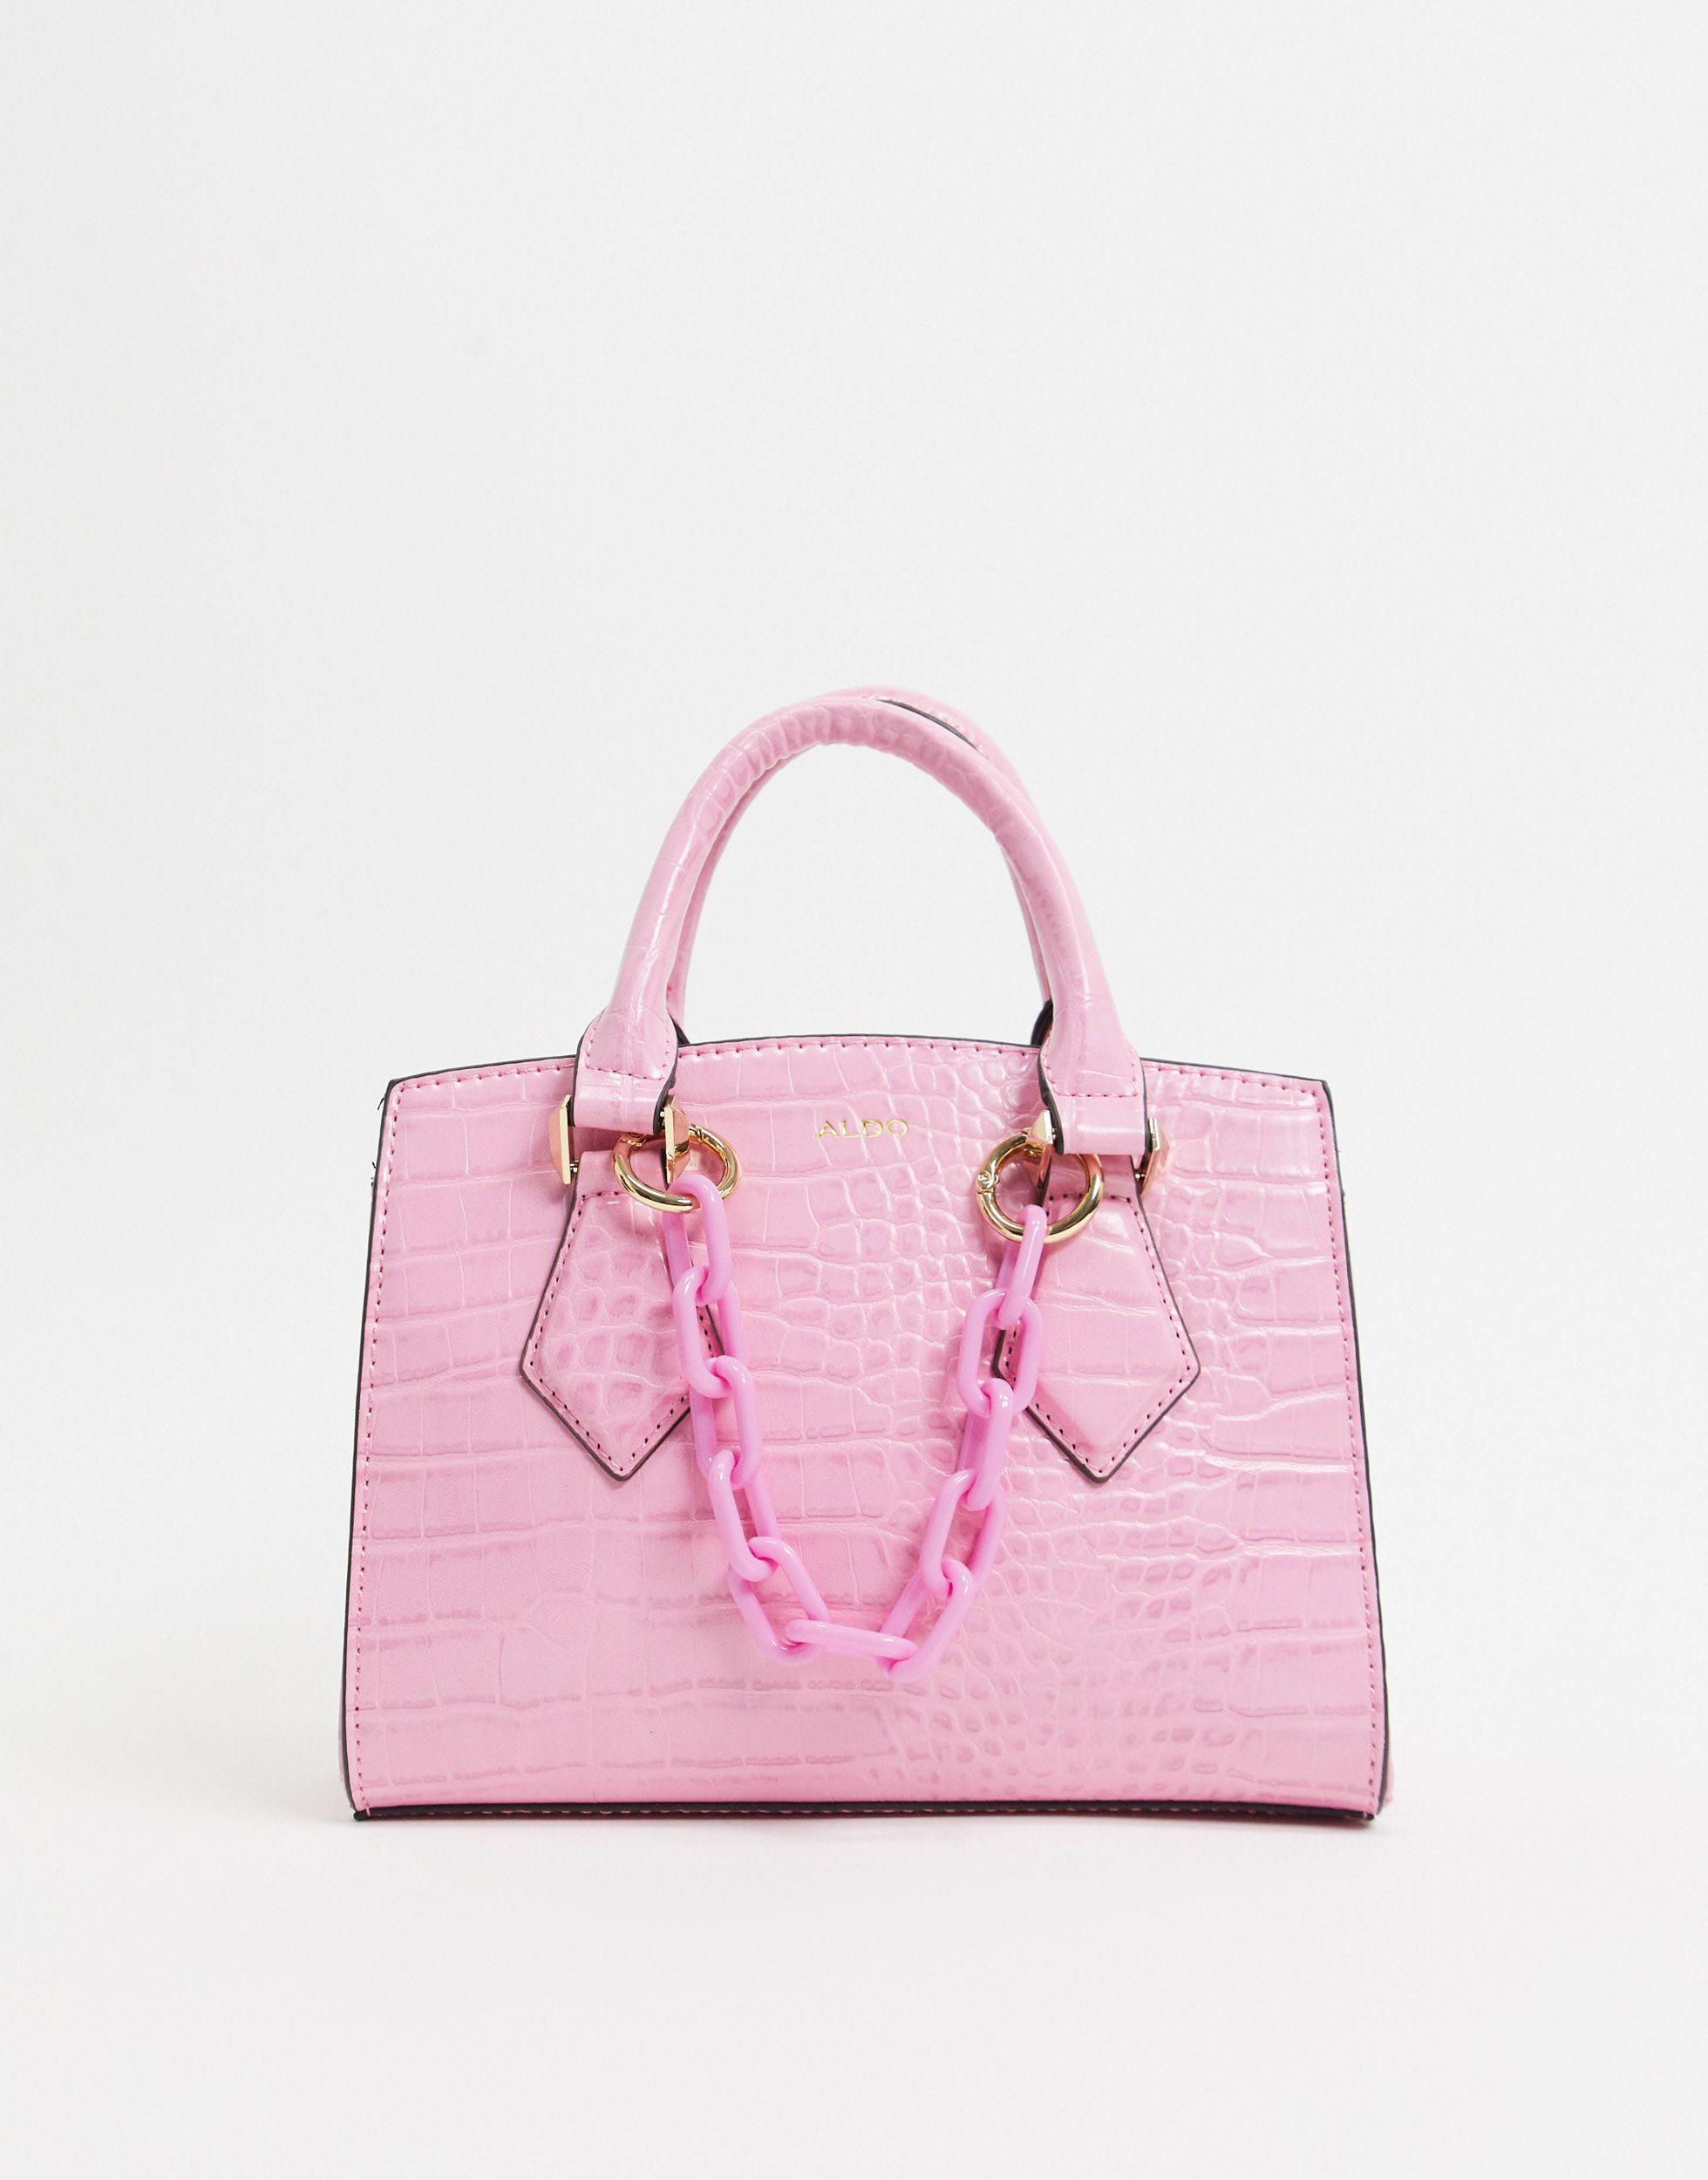 Maroubra - Petit sac ALDO en coloris Rose - Lyst